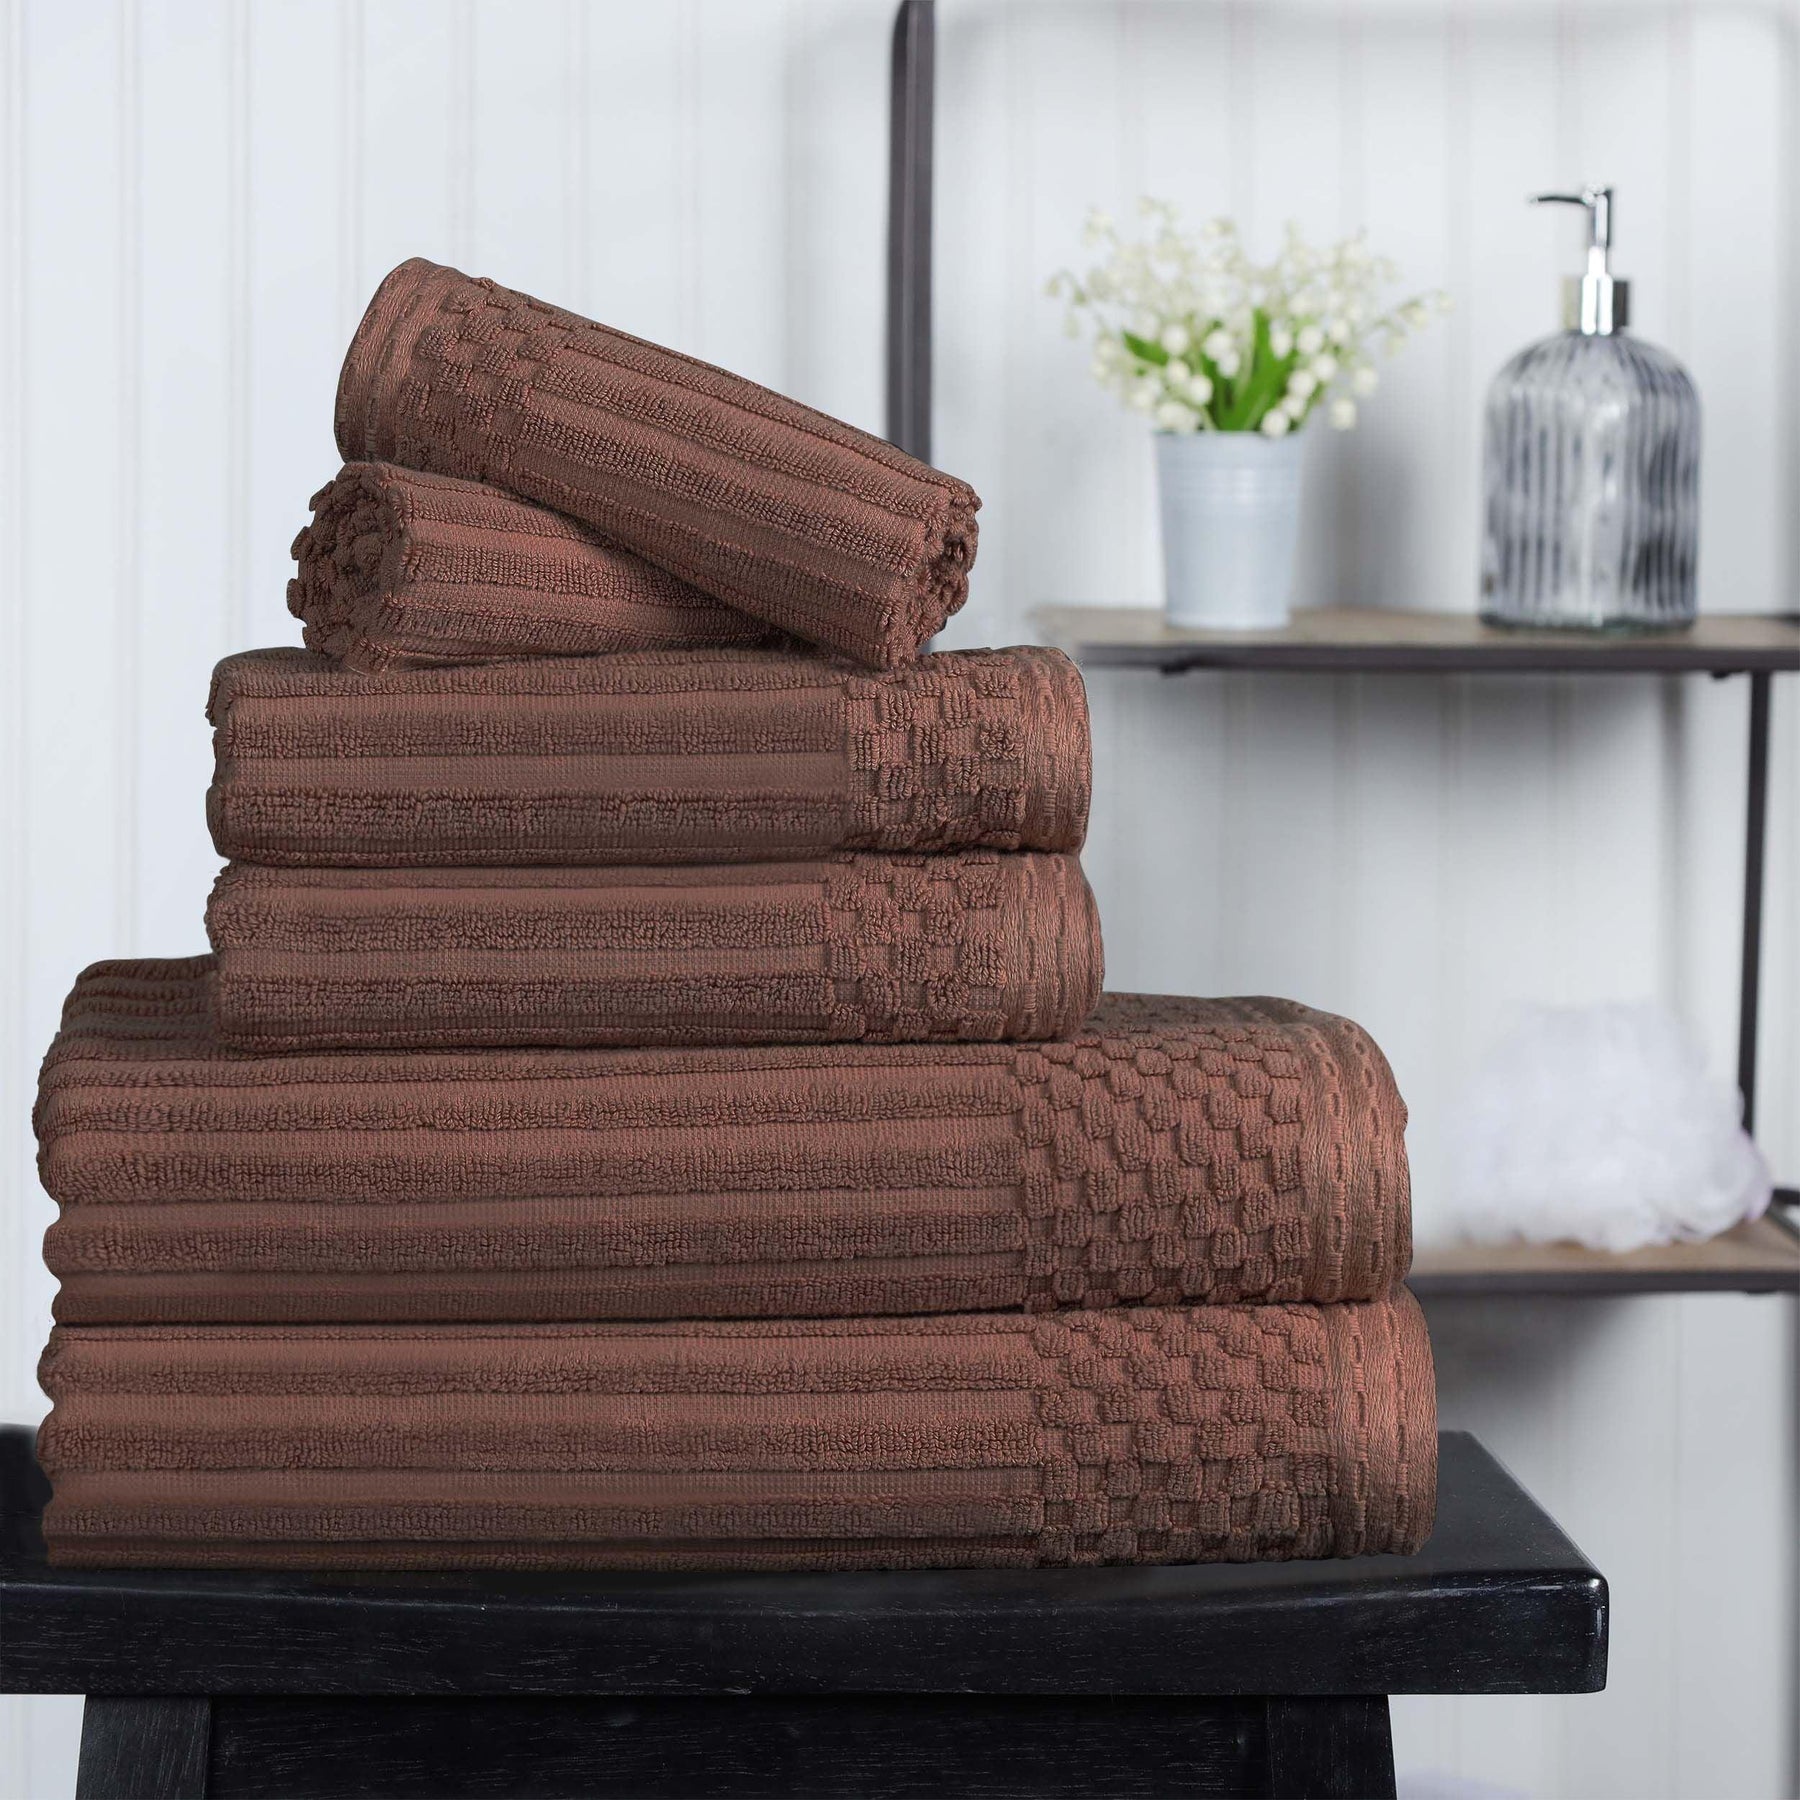 Ribbed Textured Cotton Medium Weight 6 Piece Towel Set - Java